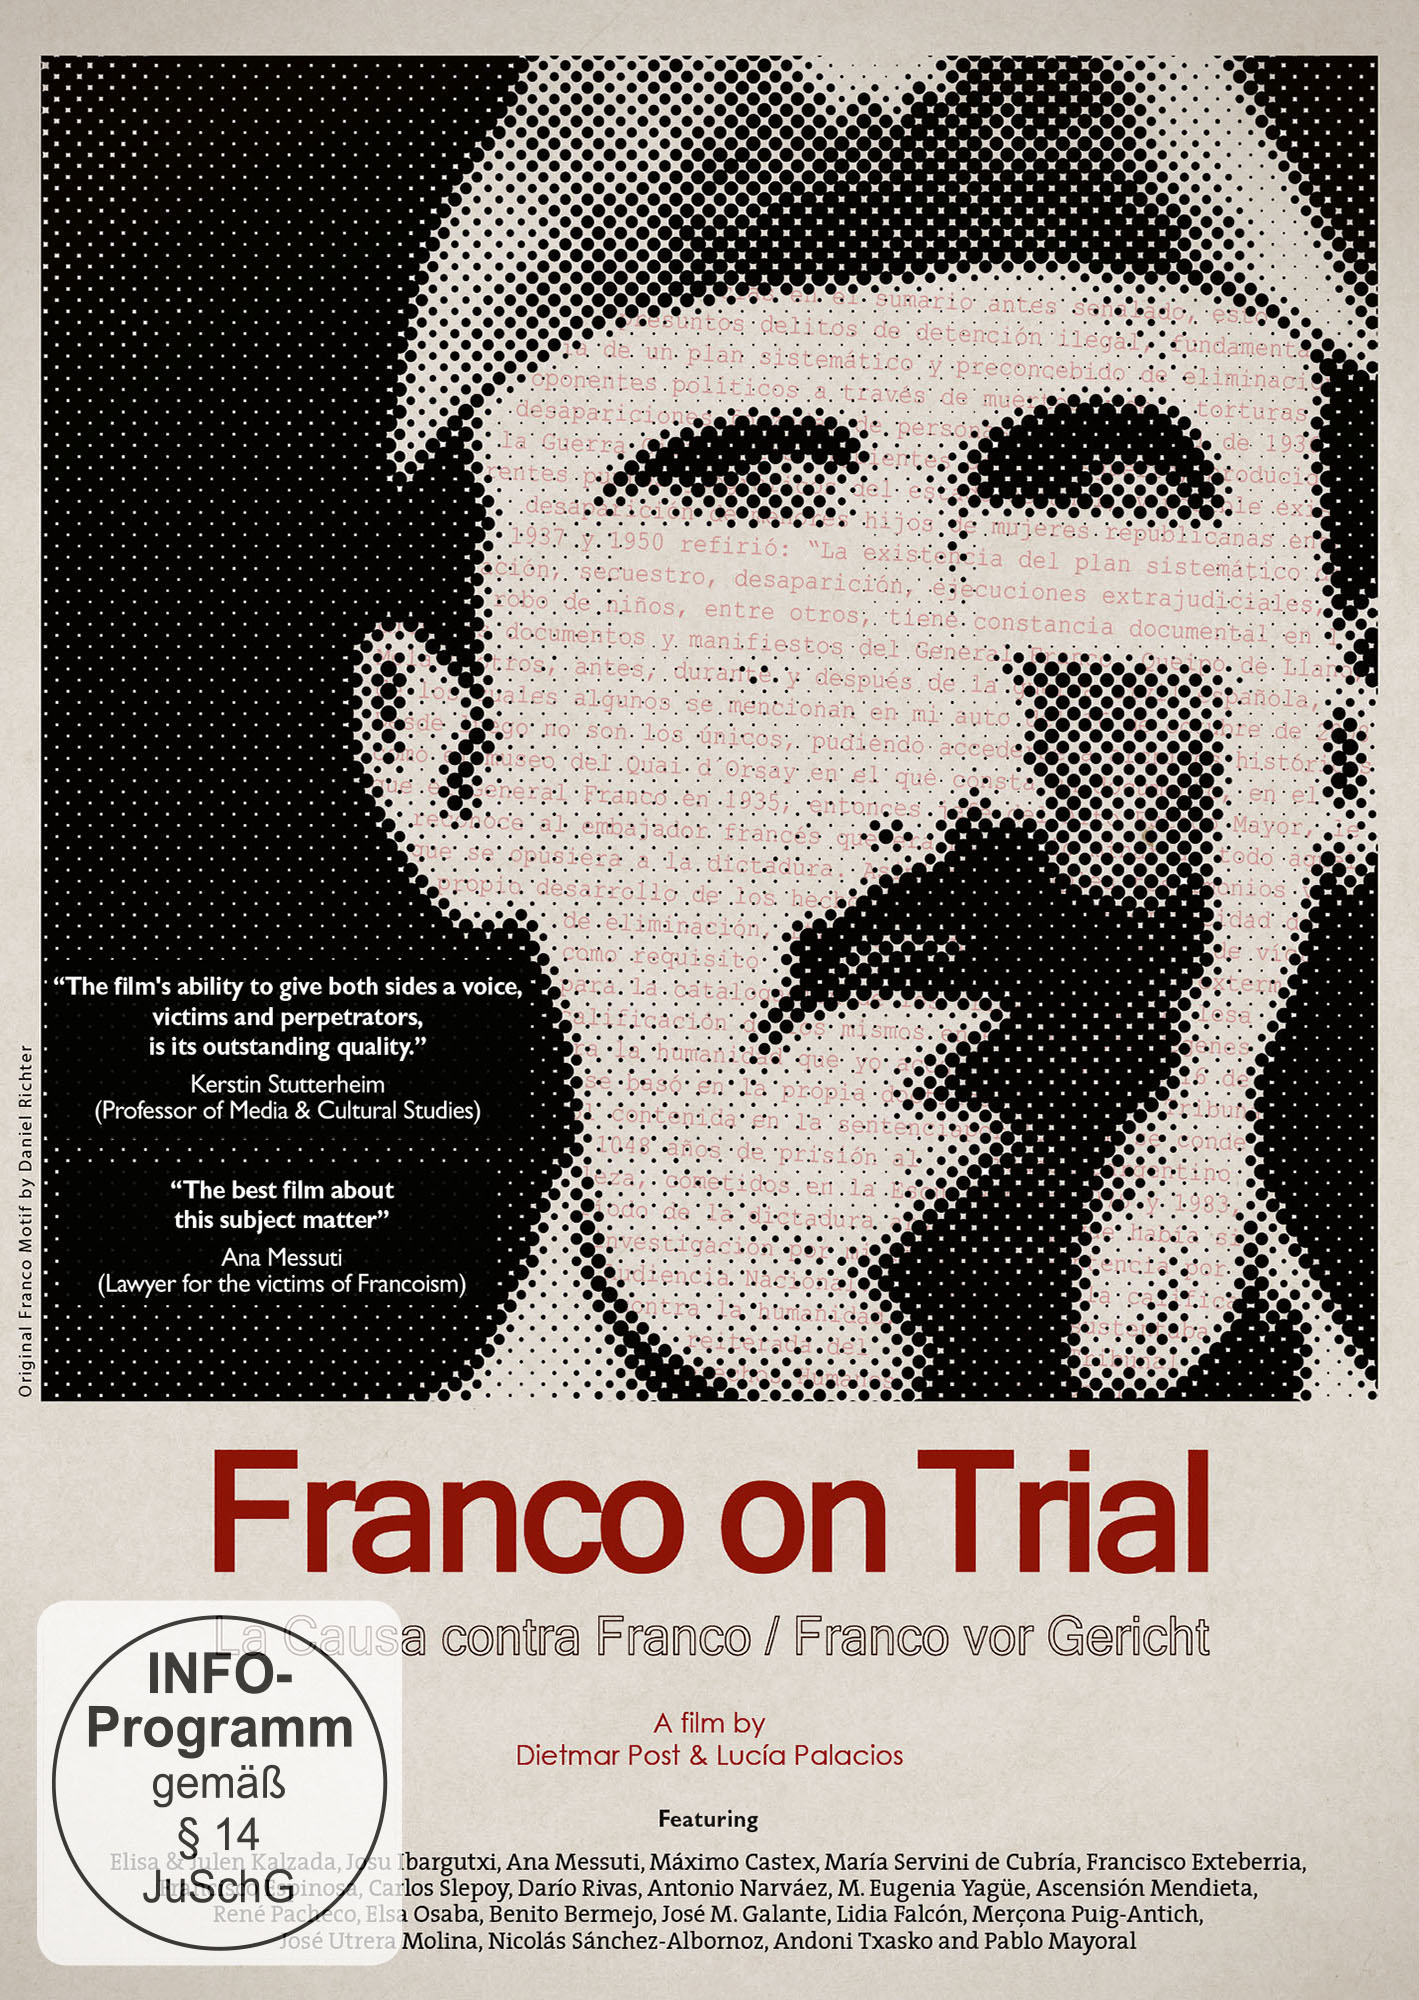 Franco Das Gericht: spanische Nürnberg? DVD vor